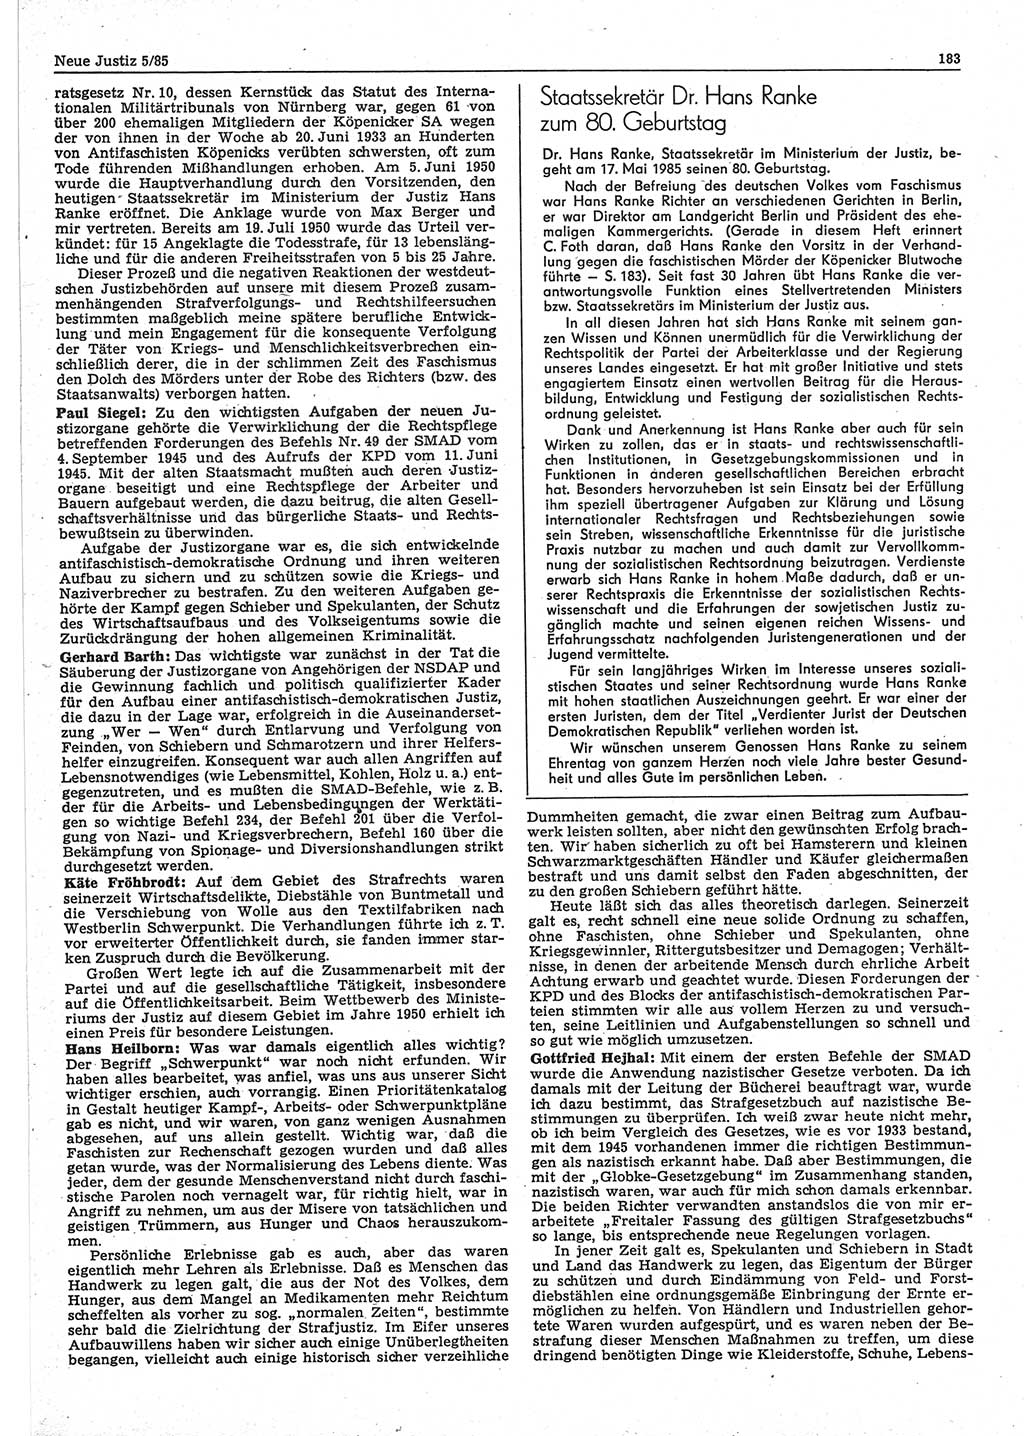 Neue Justiz (NJ), Zeitschrift für sozialistisches Recht und Gesetzlichkeit [Deutsche Demokratische Republik (DDR)], 39. Jahrgang 1985, Seite 183 (NJ DDR 1985, S. 183)